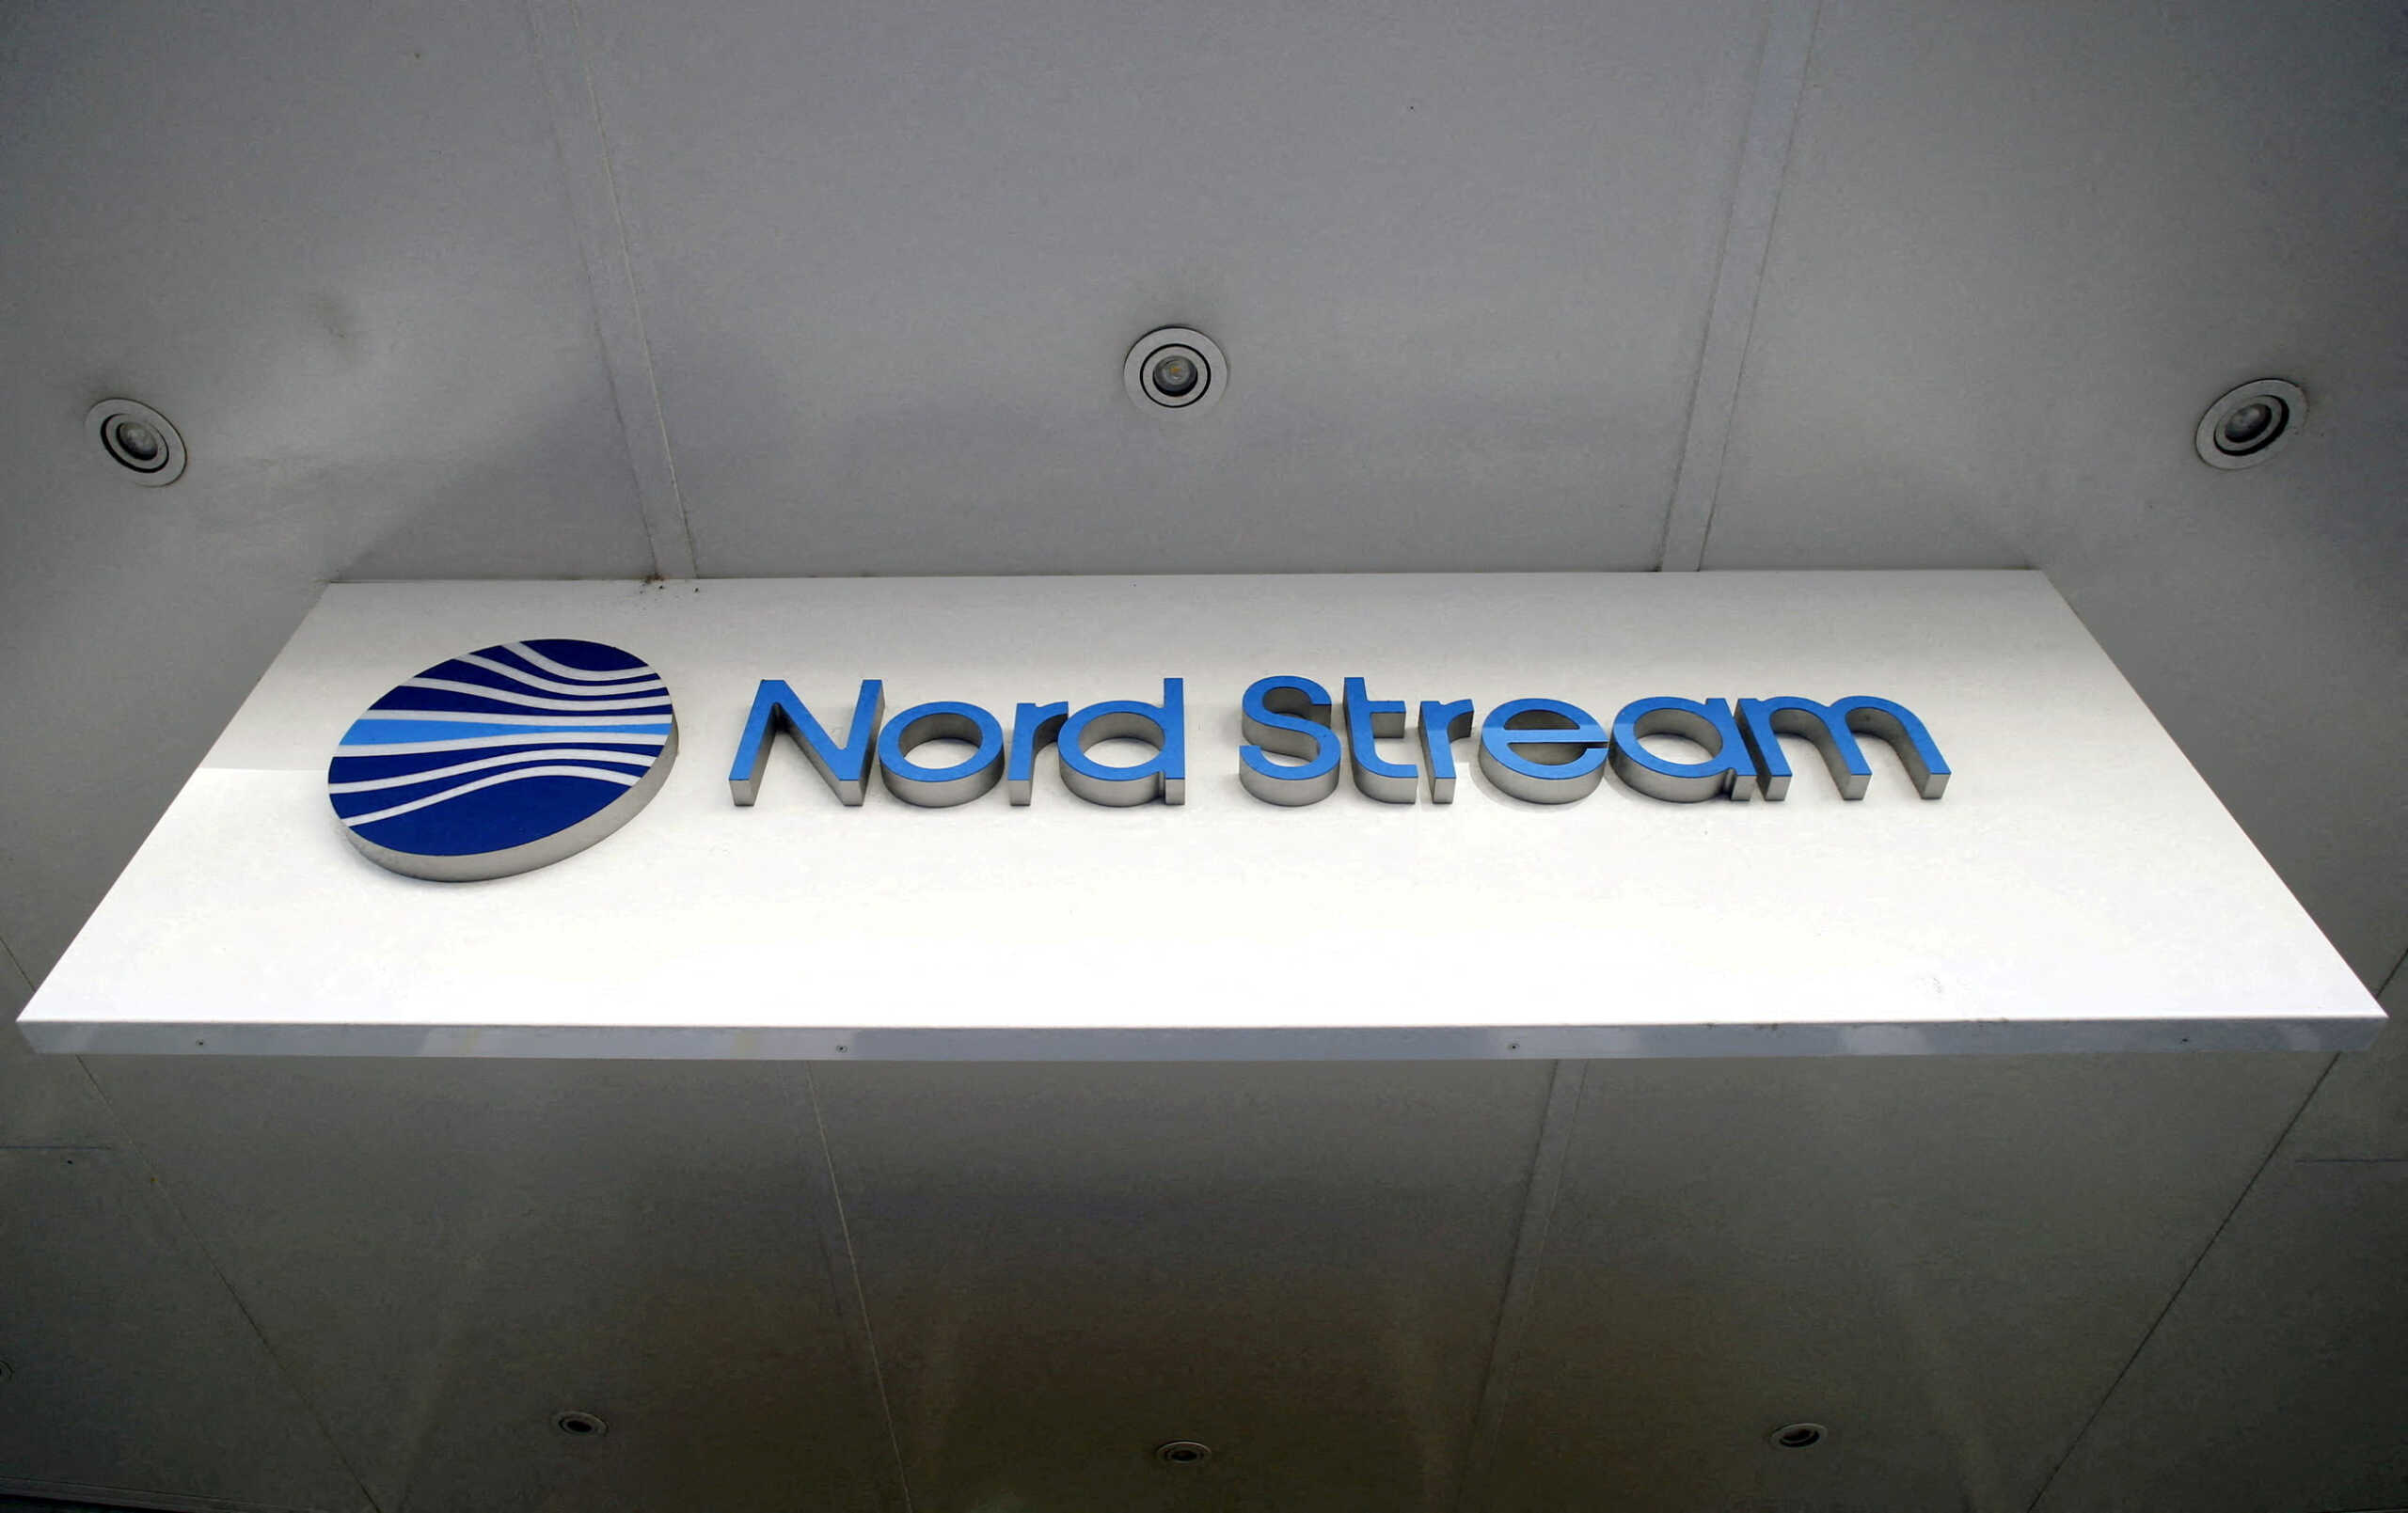 ΝΑΤΟ για Nord Stream: Ανεύθυνες πράξεις σαμποτάζ οι διαρροές – Θα απαντήσουμε αποφασιστικά